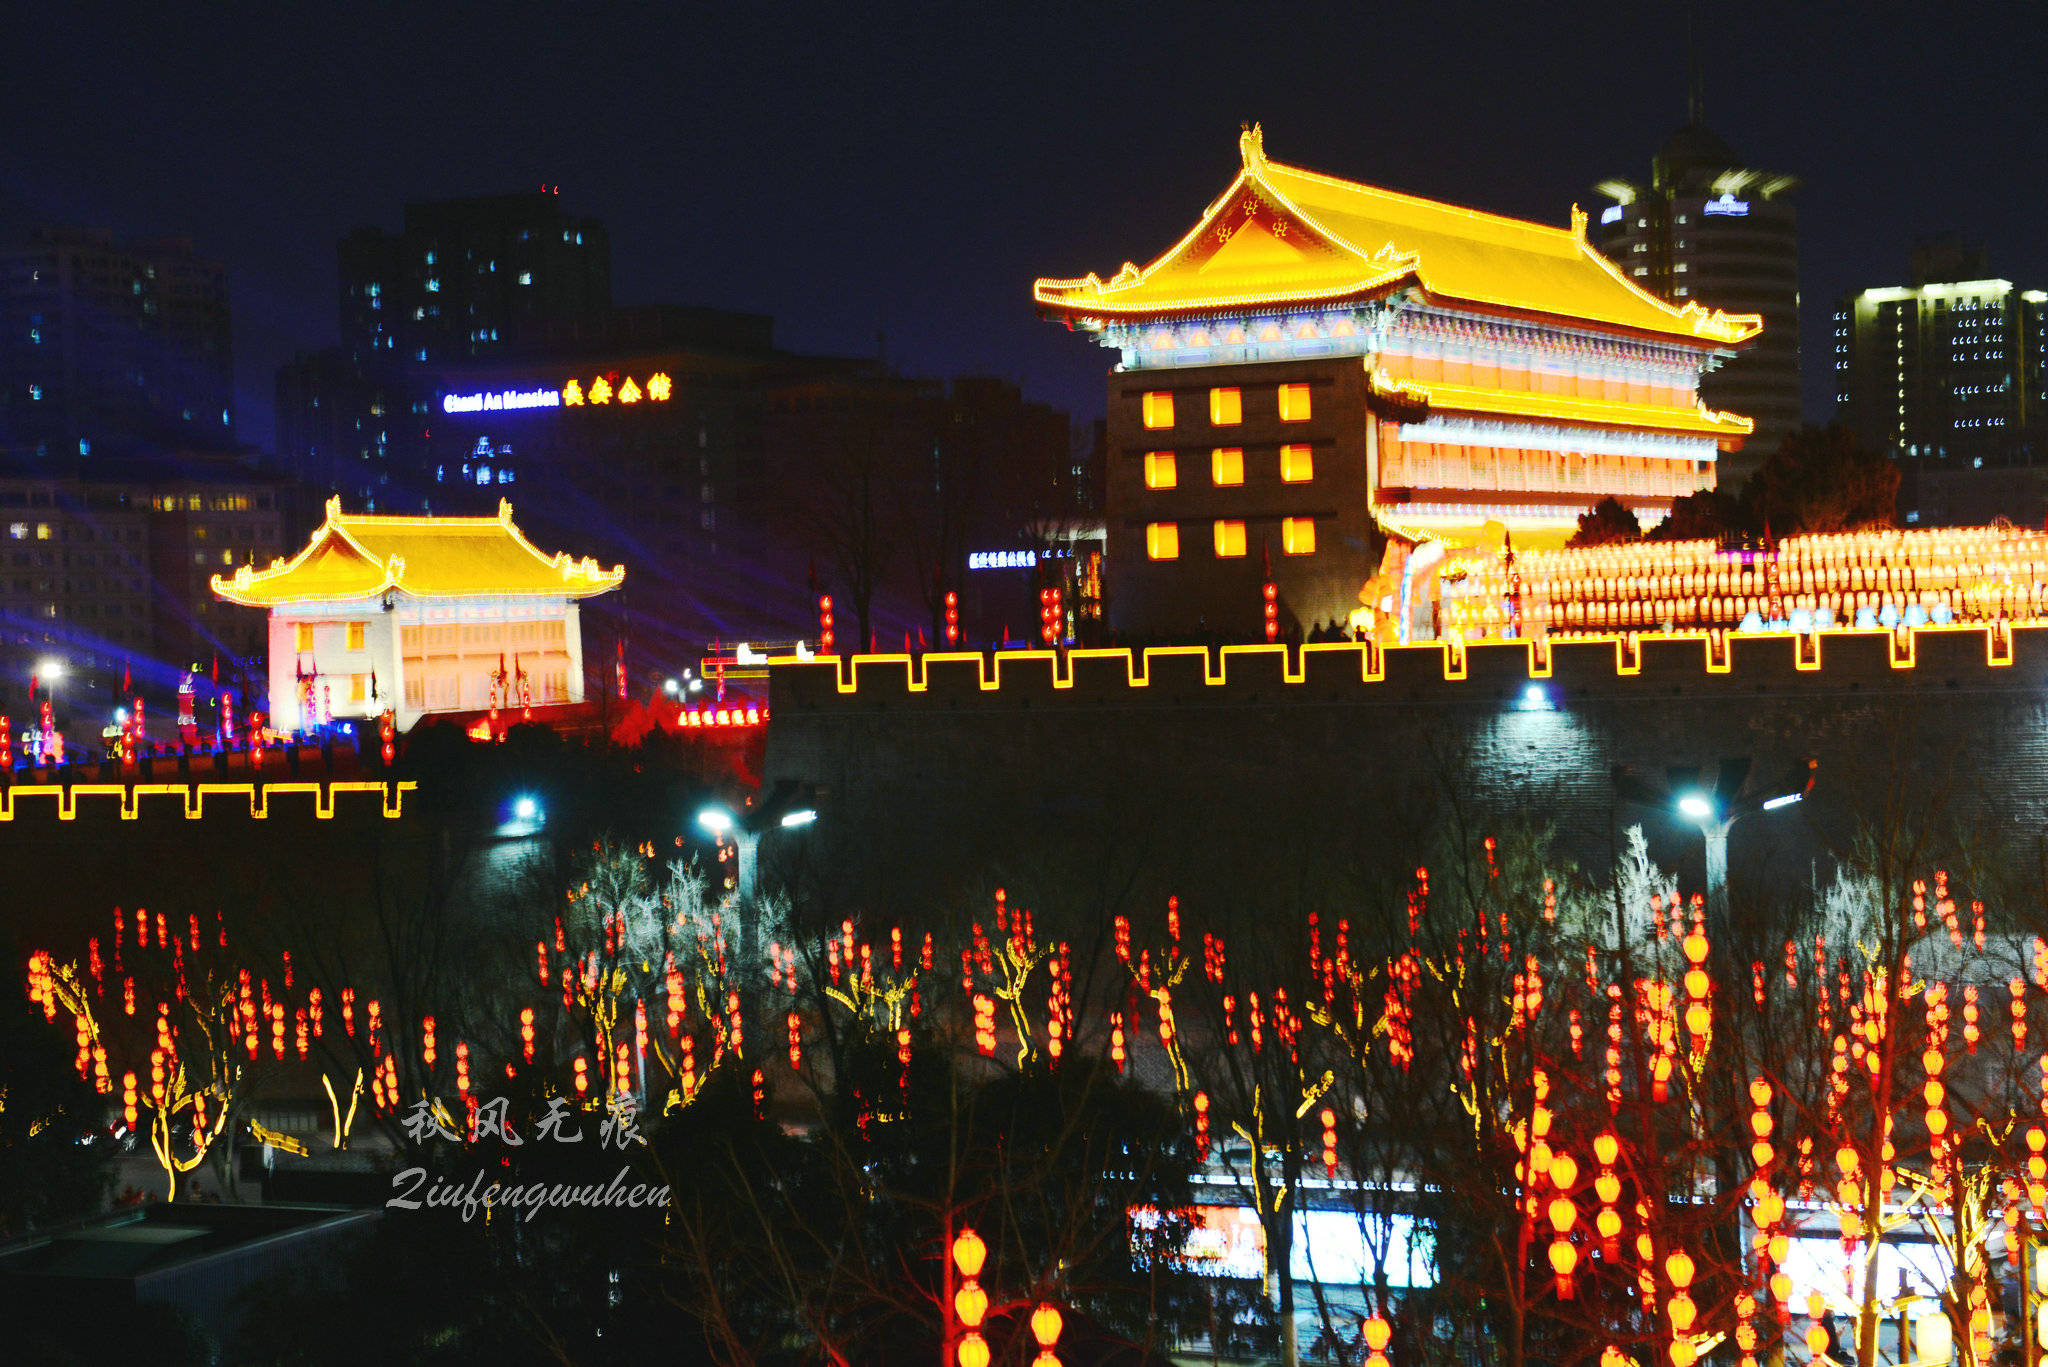 上海交大在全球培养了一批“敦煌文化守望者” v0.05.4.72官方正式版